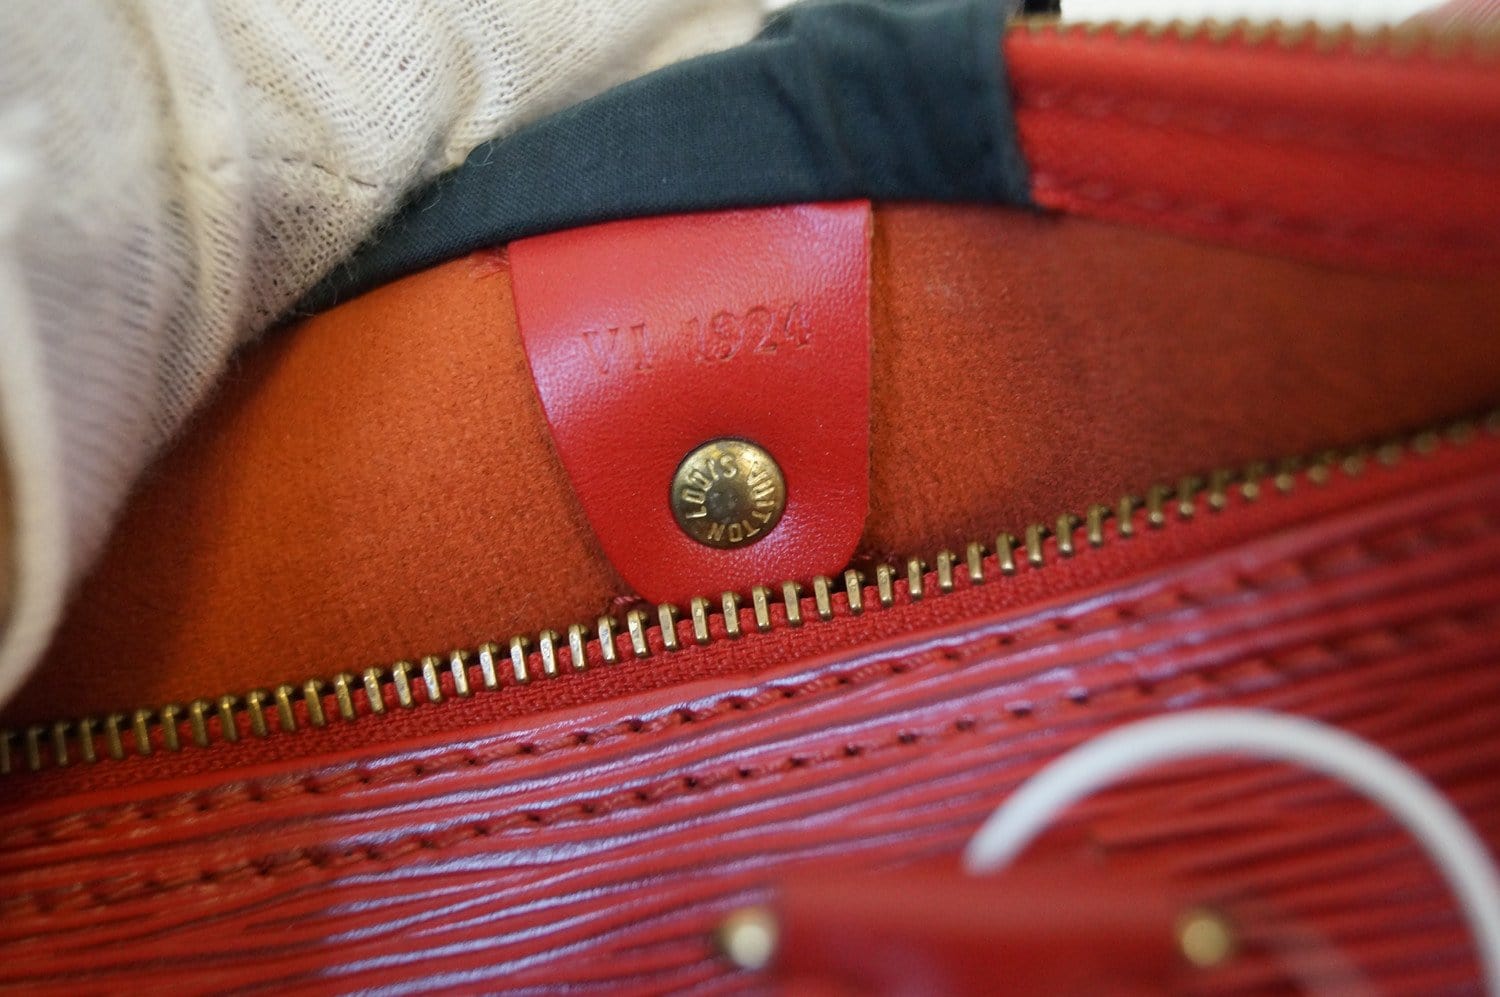 Louis Vuitton Red Epi Leather Speedy 30 Bag - Yoogi's Closet